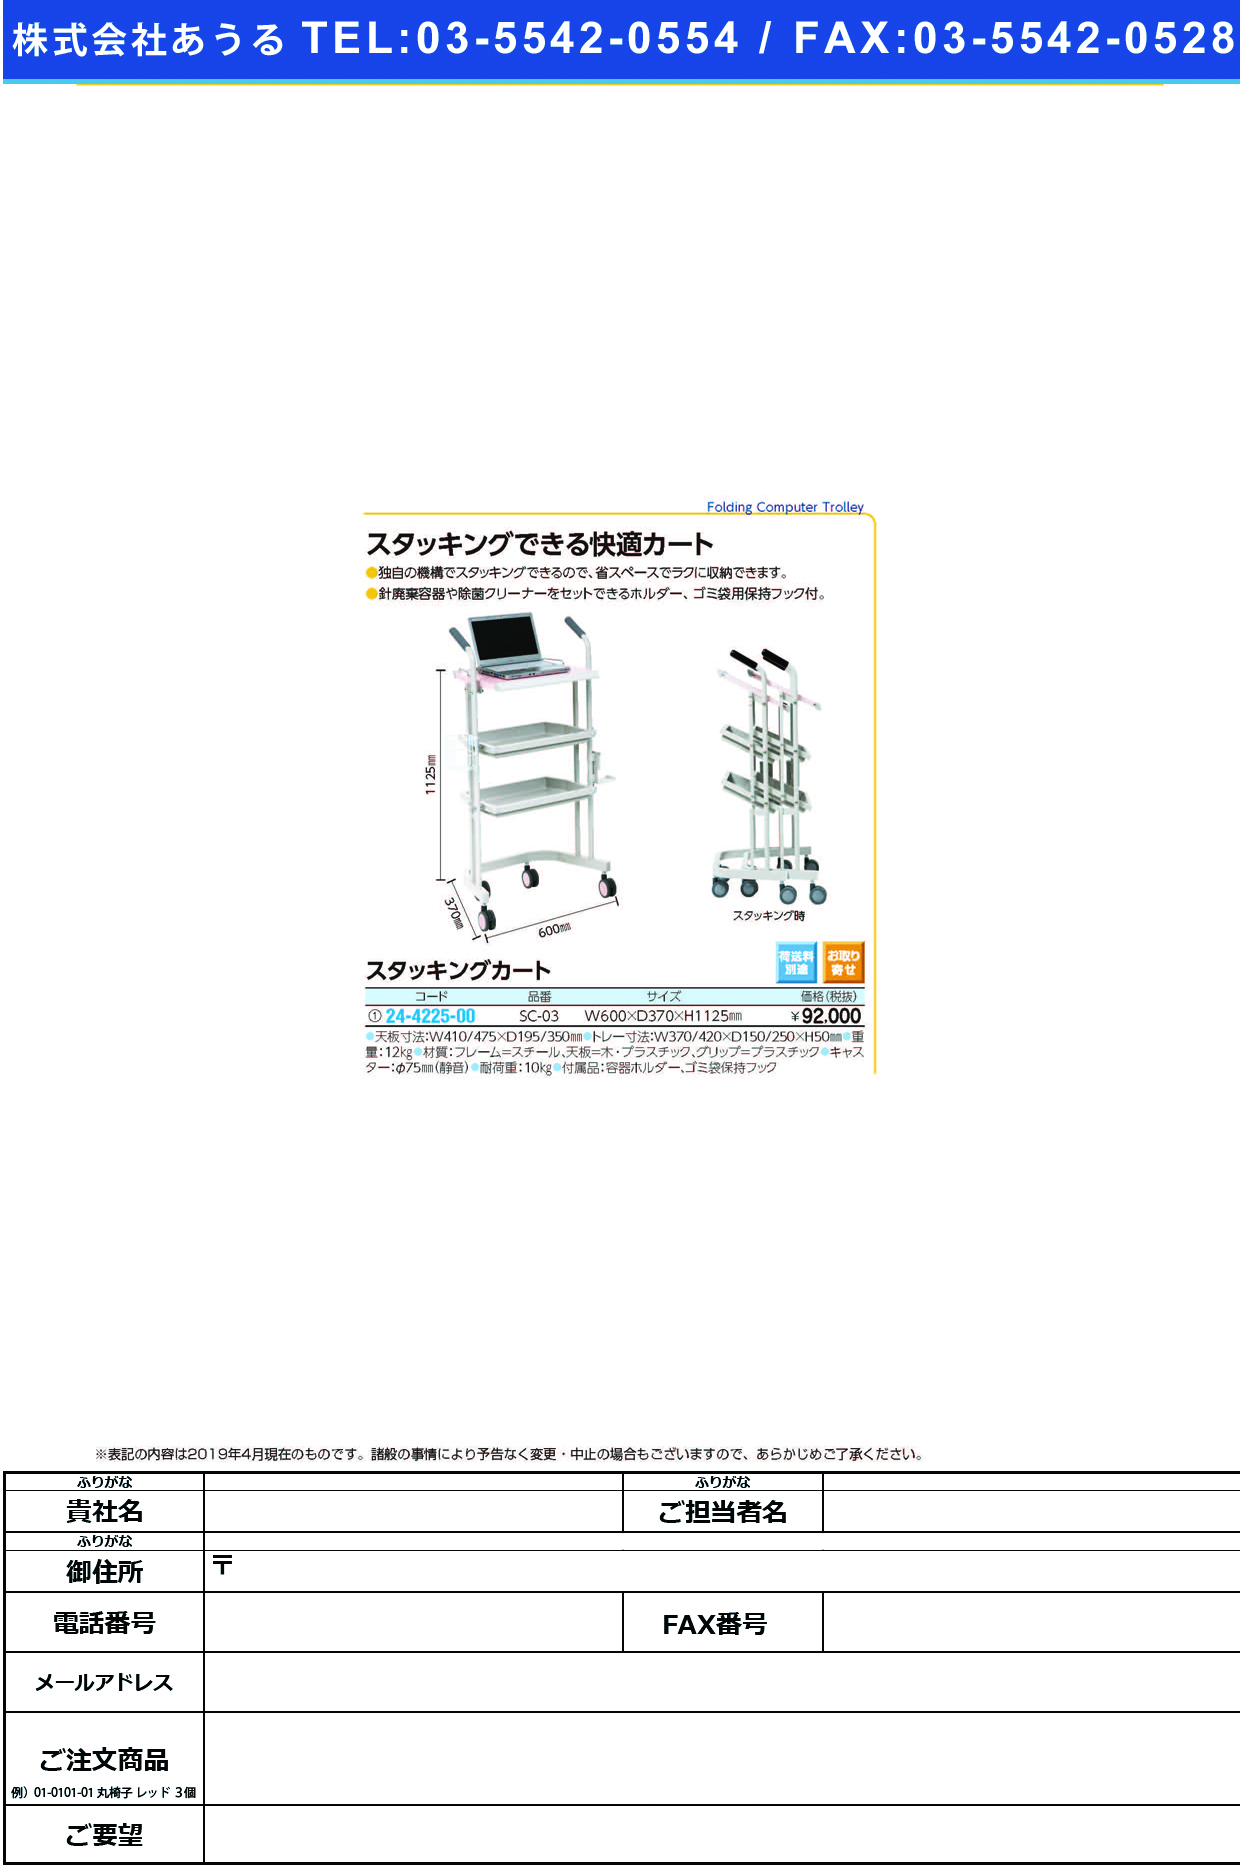 (24-4225-00)スタッキングカート SC-03(ﾋﾟﾝｸ) ｽﾀｯｷﾝｸﾞｶｰﾄ【1台単位】【2019年カタログ商品】